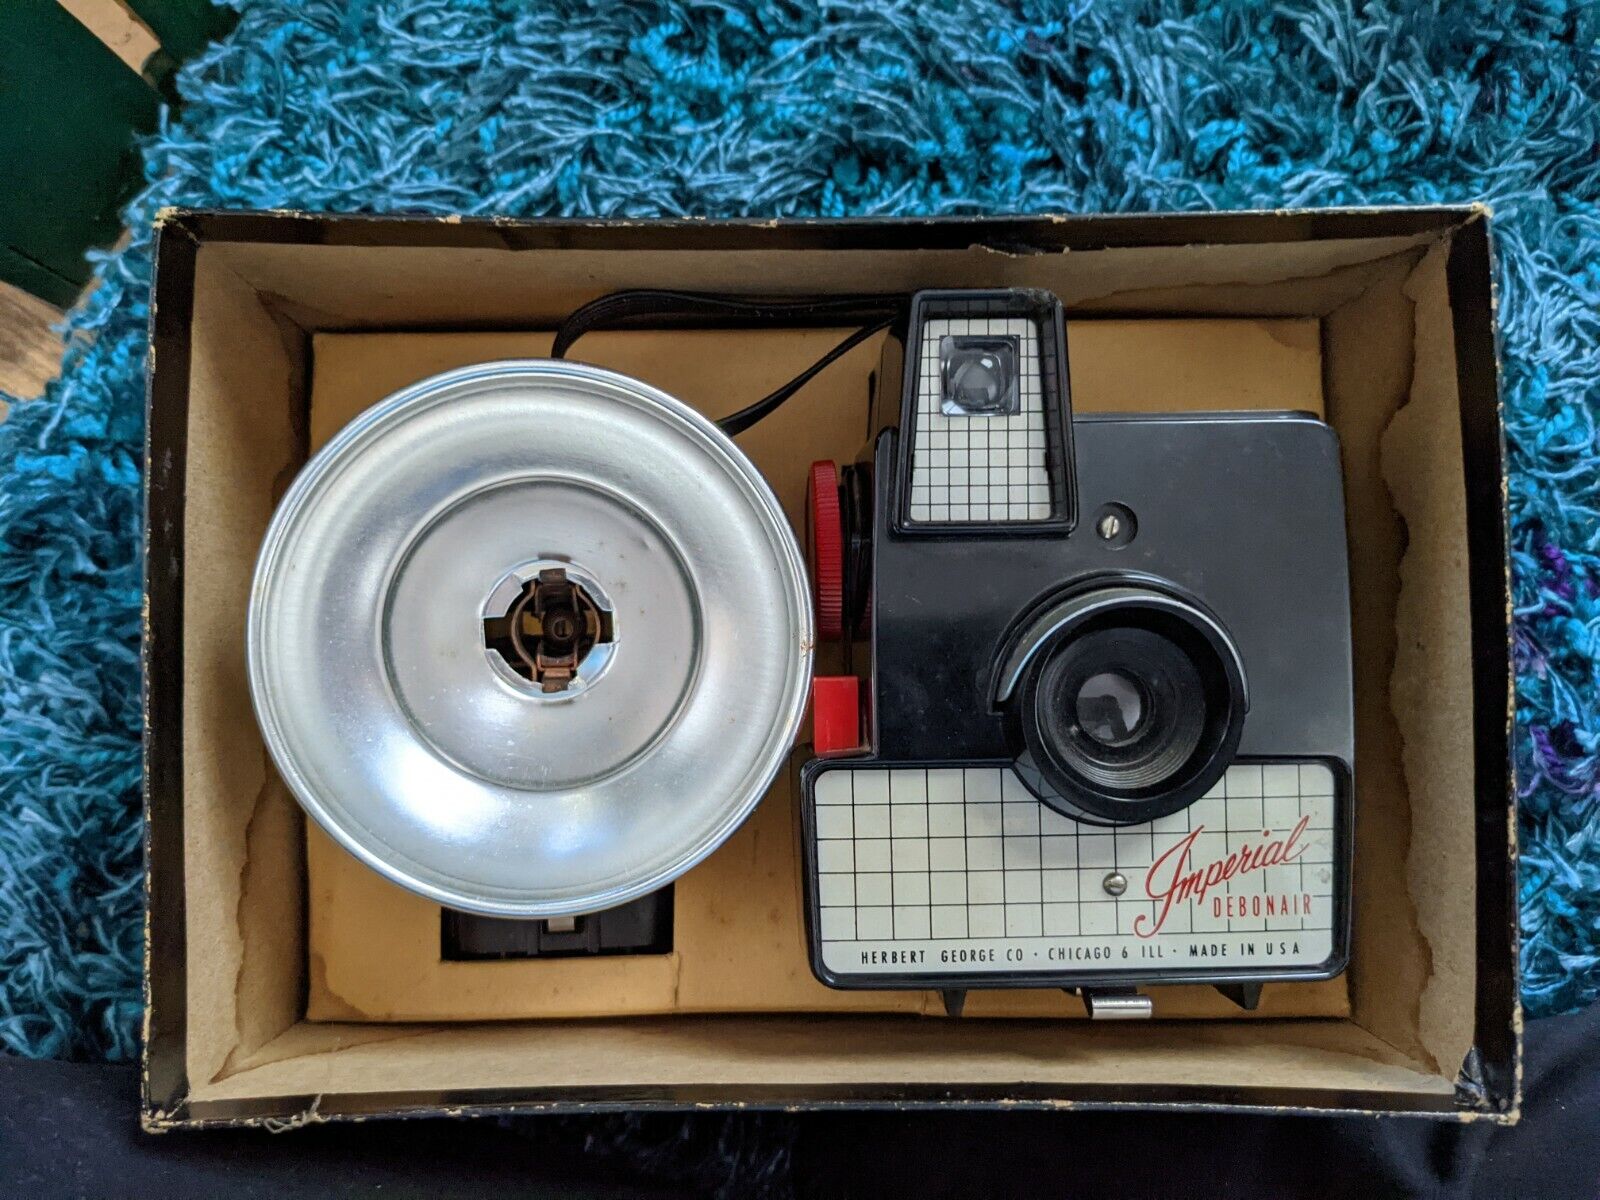 Imperial Debonair Model 810 Camera With M2 Plus Flash Unit